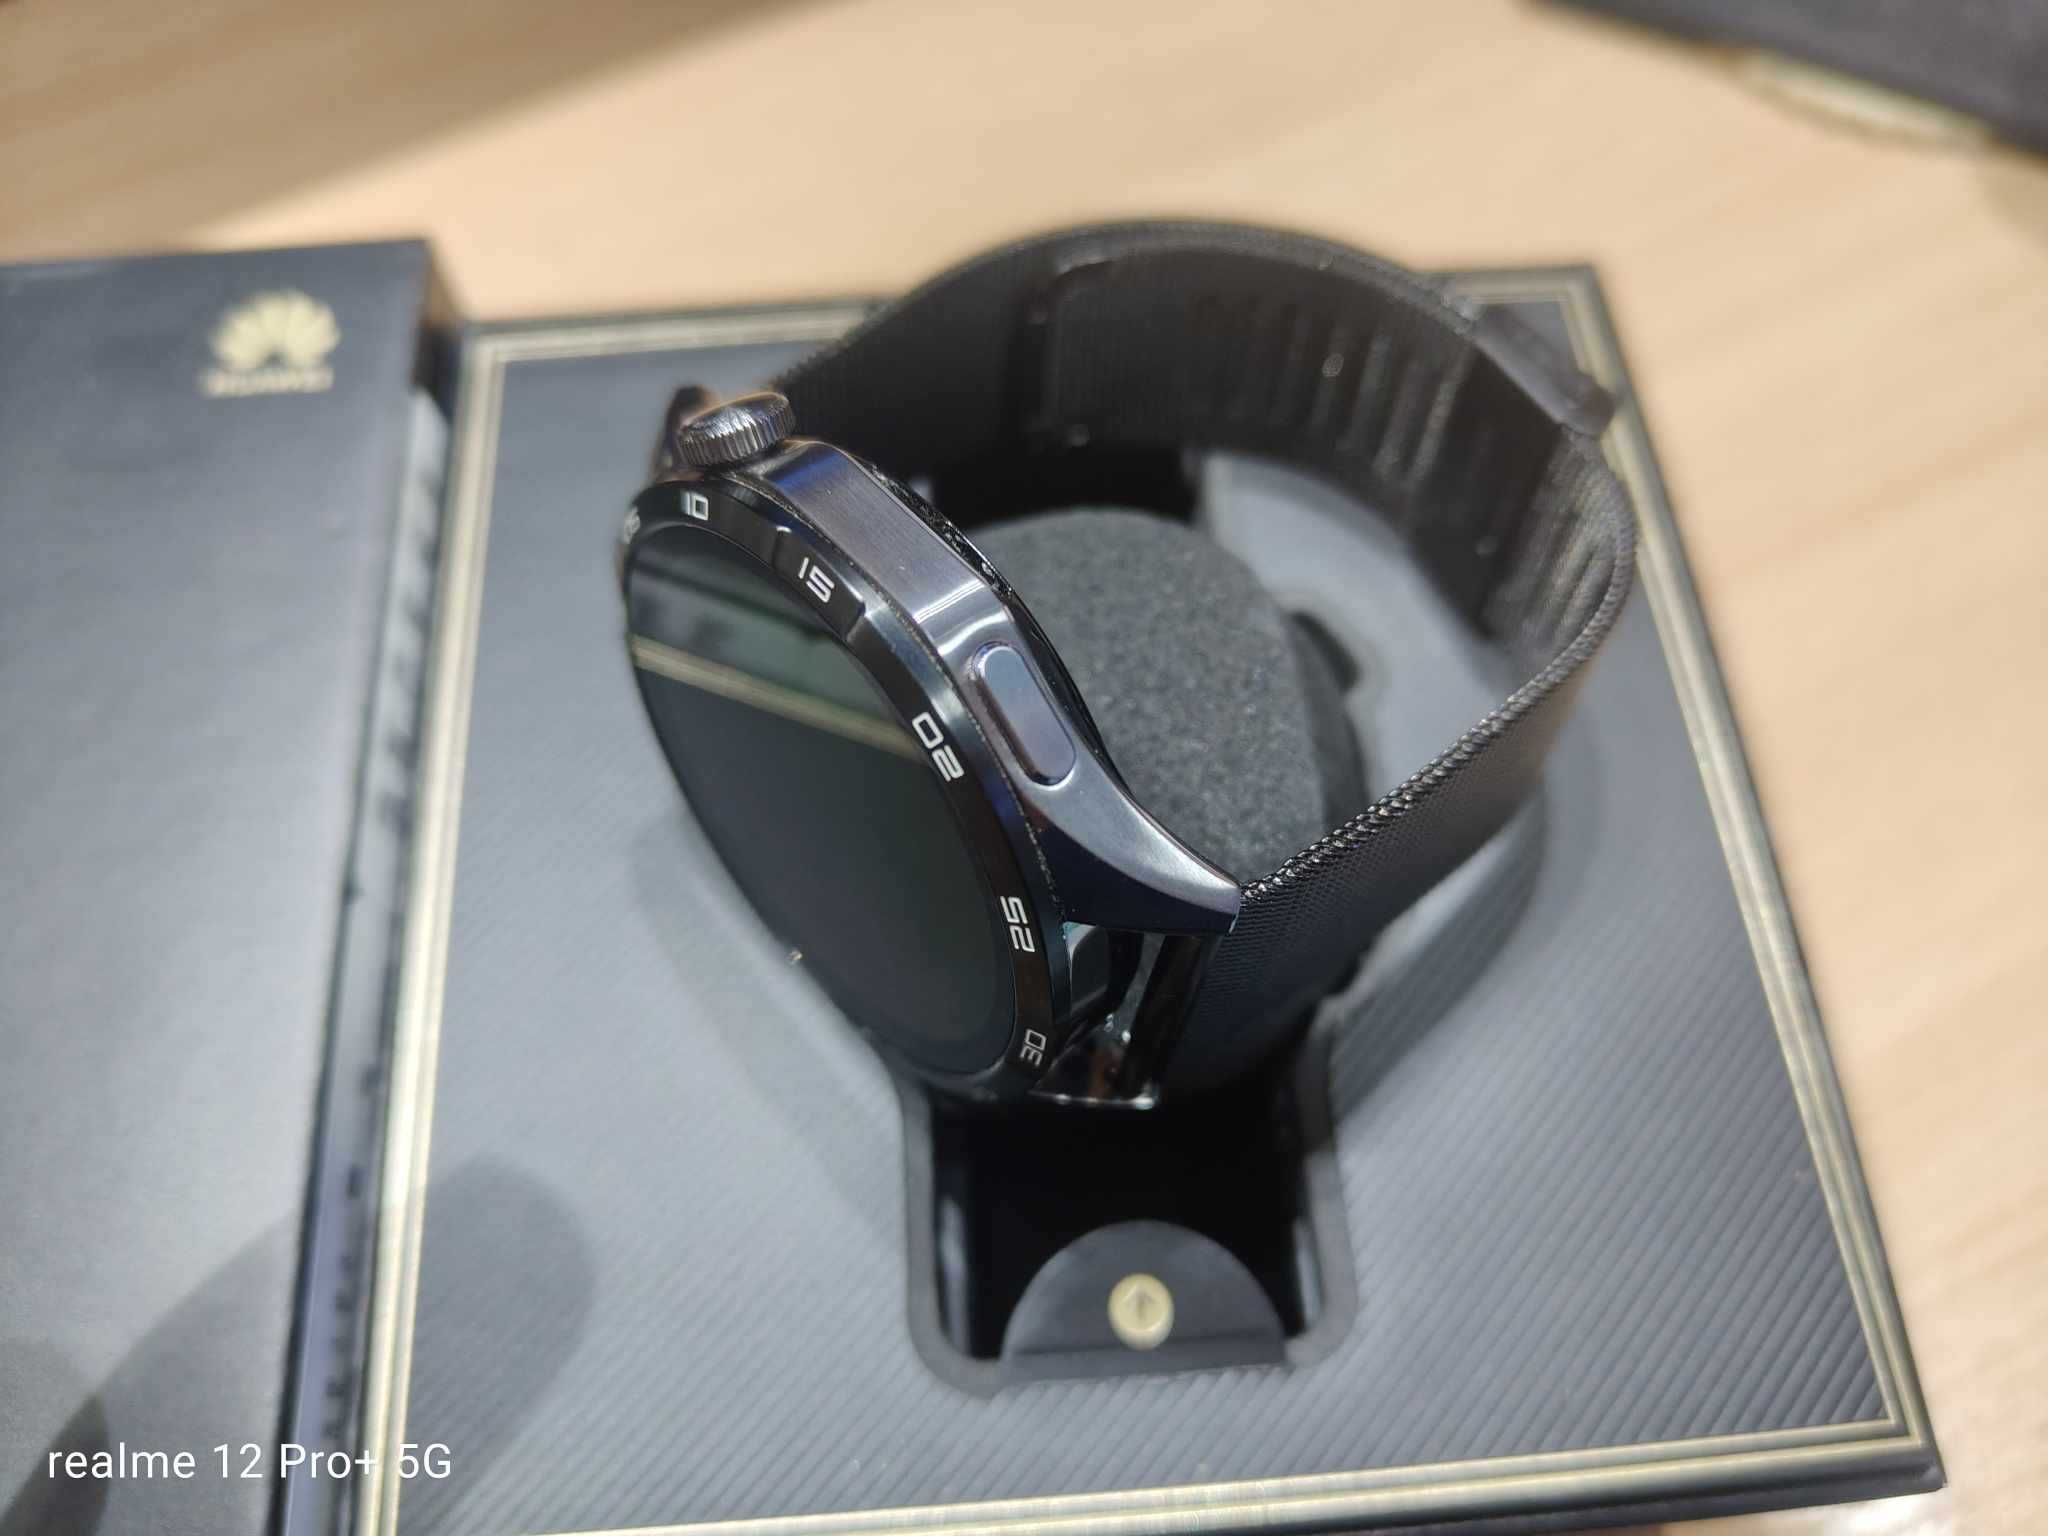 Huawei Watch GT 4 Sport idealny/gwarancja